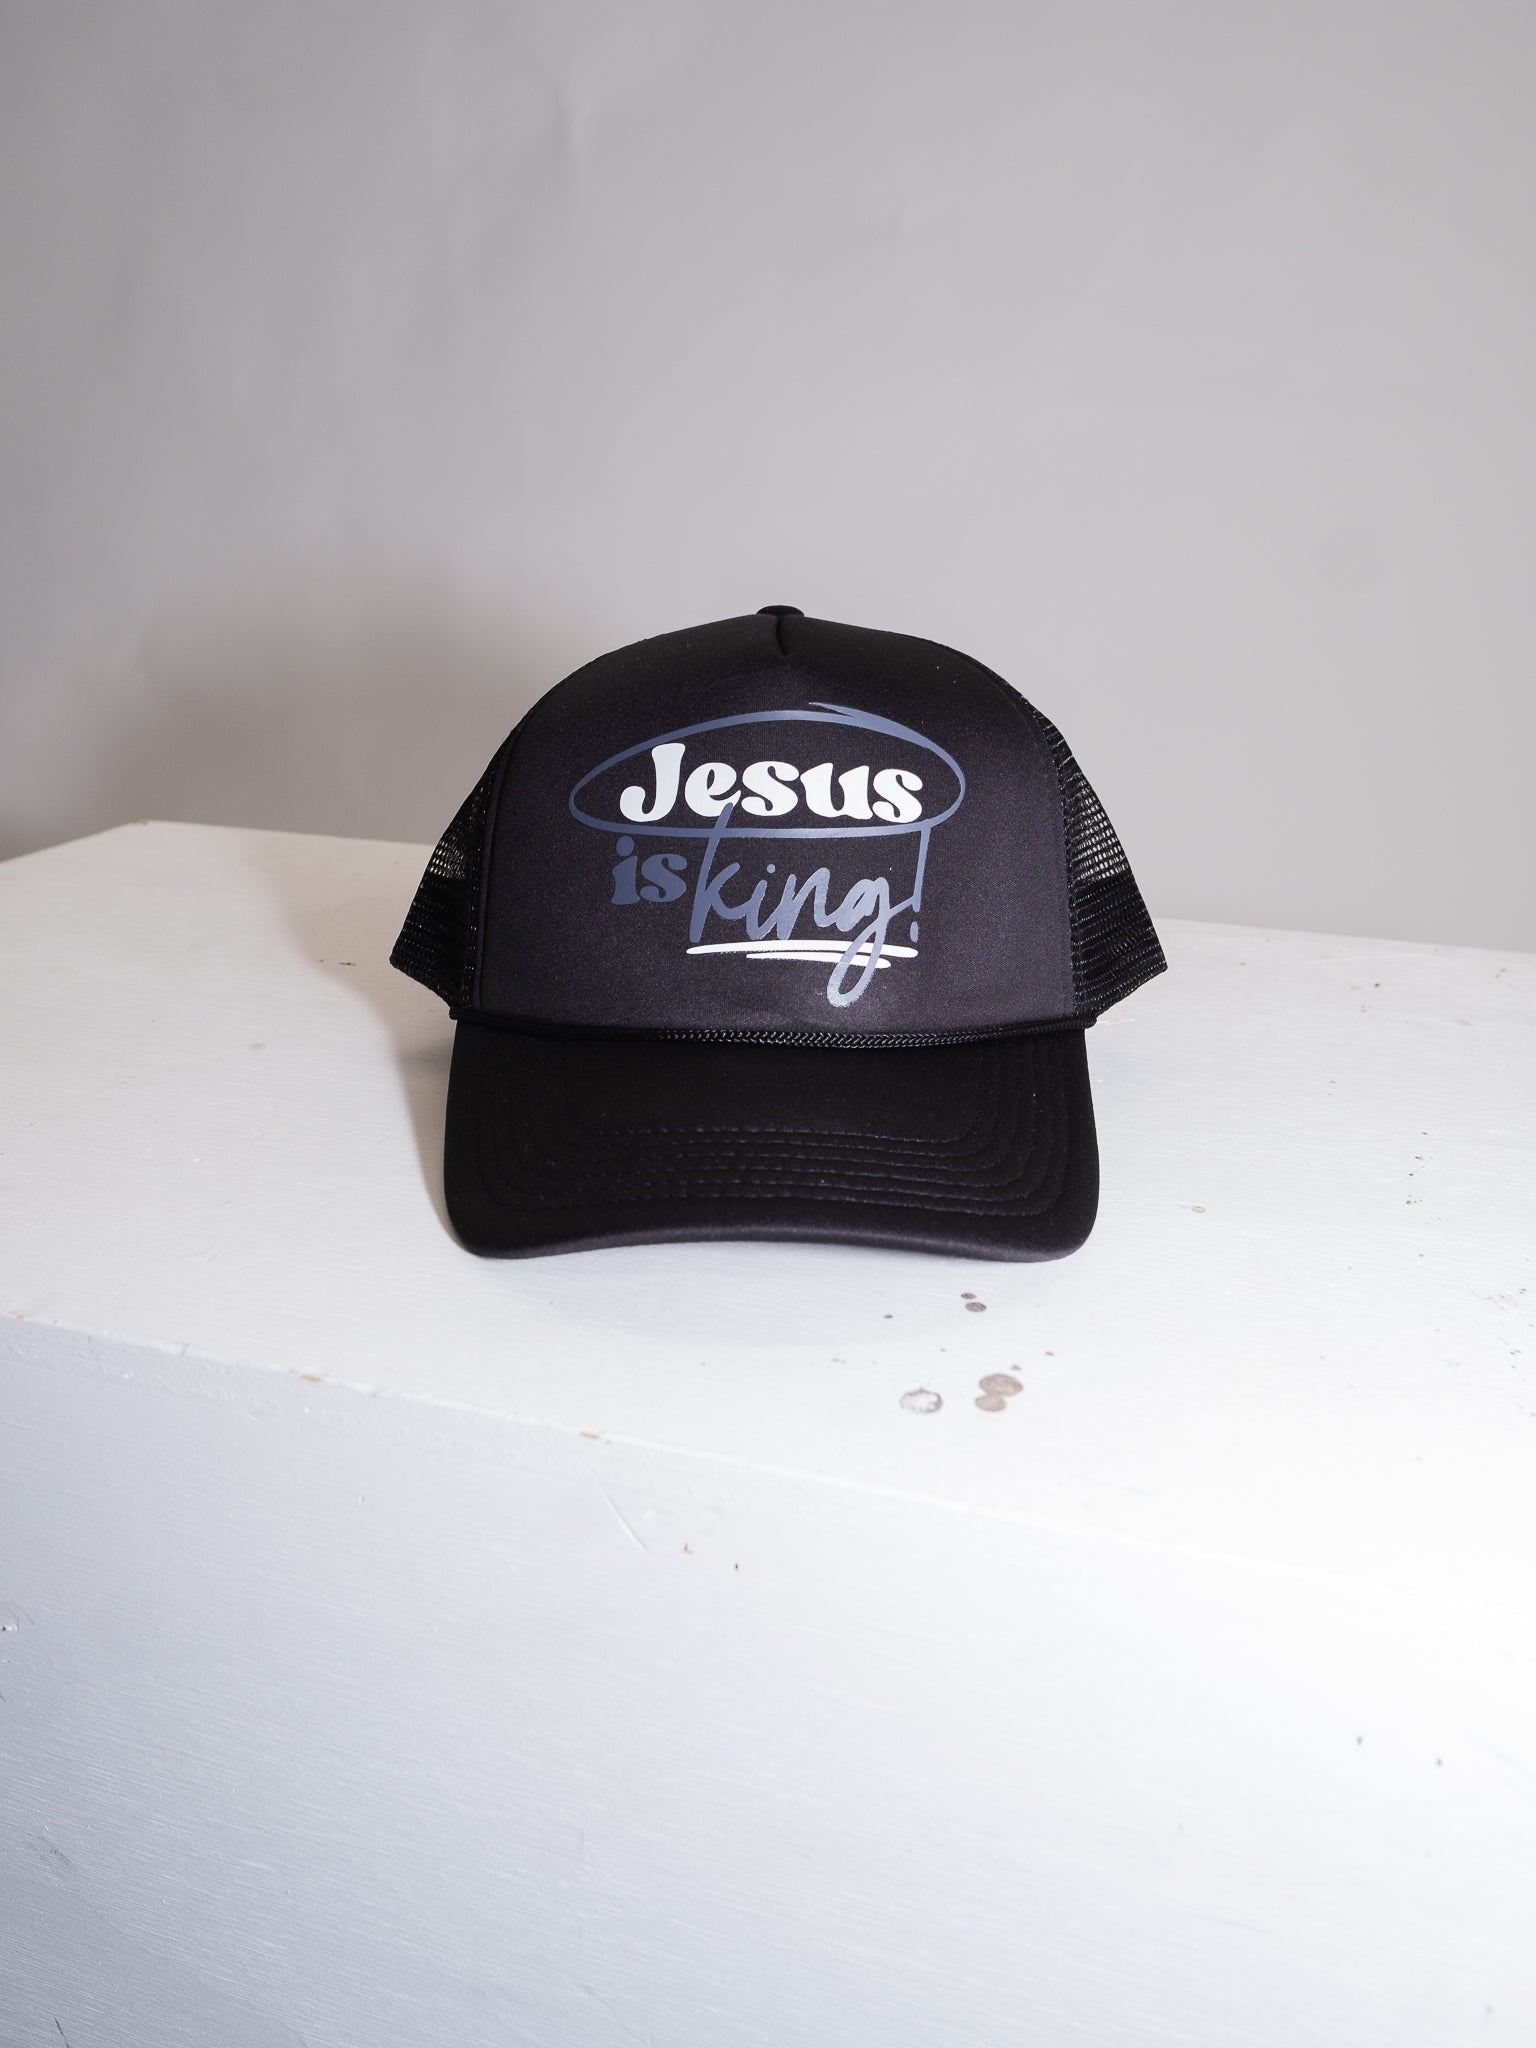 JESUS IS KING TRUCKER HAT